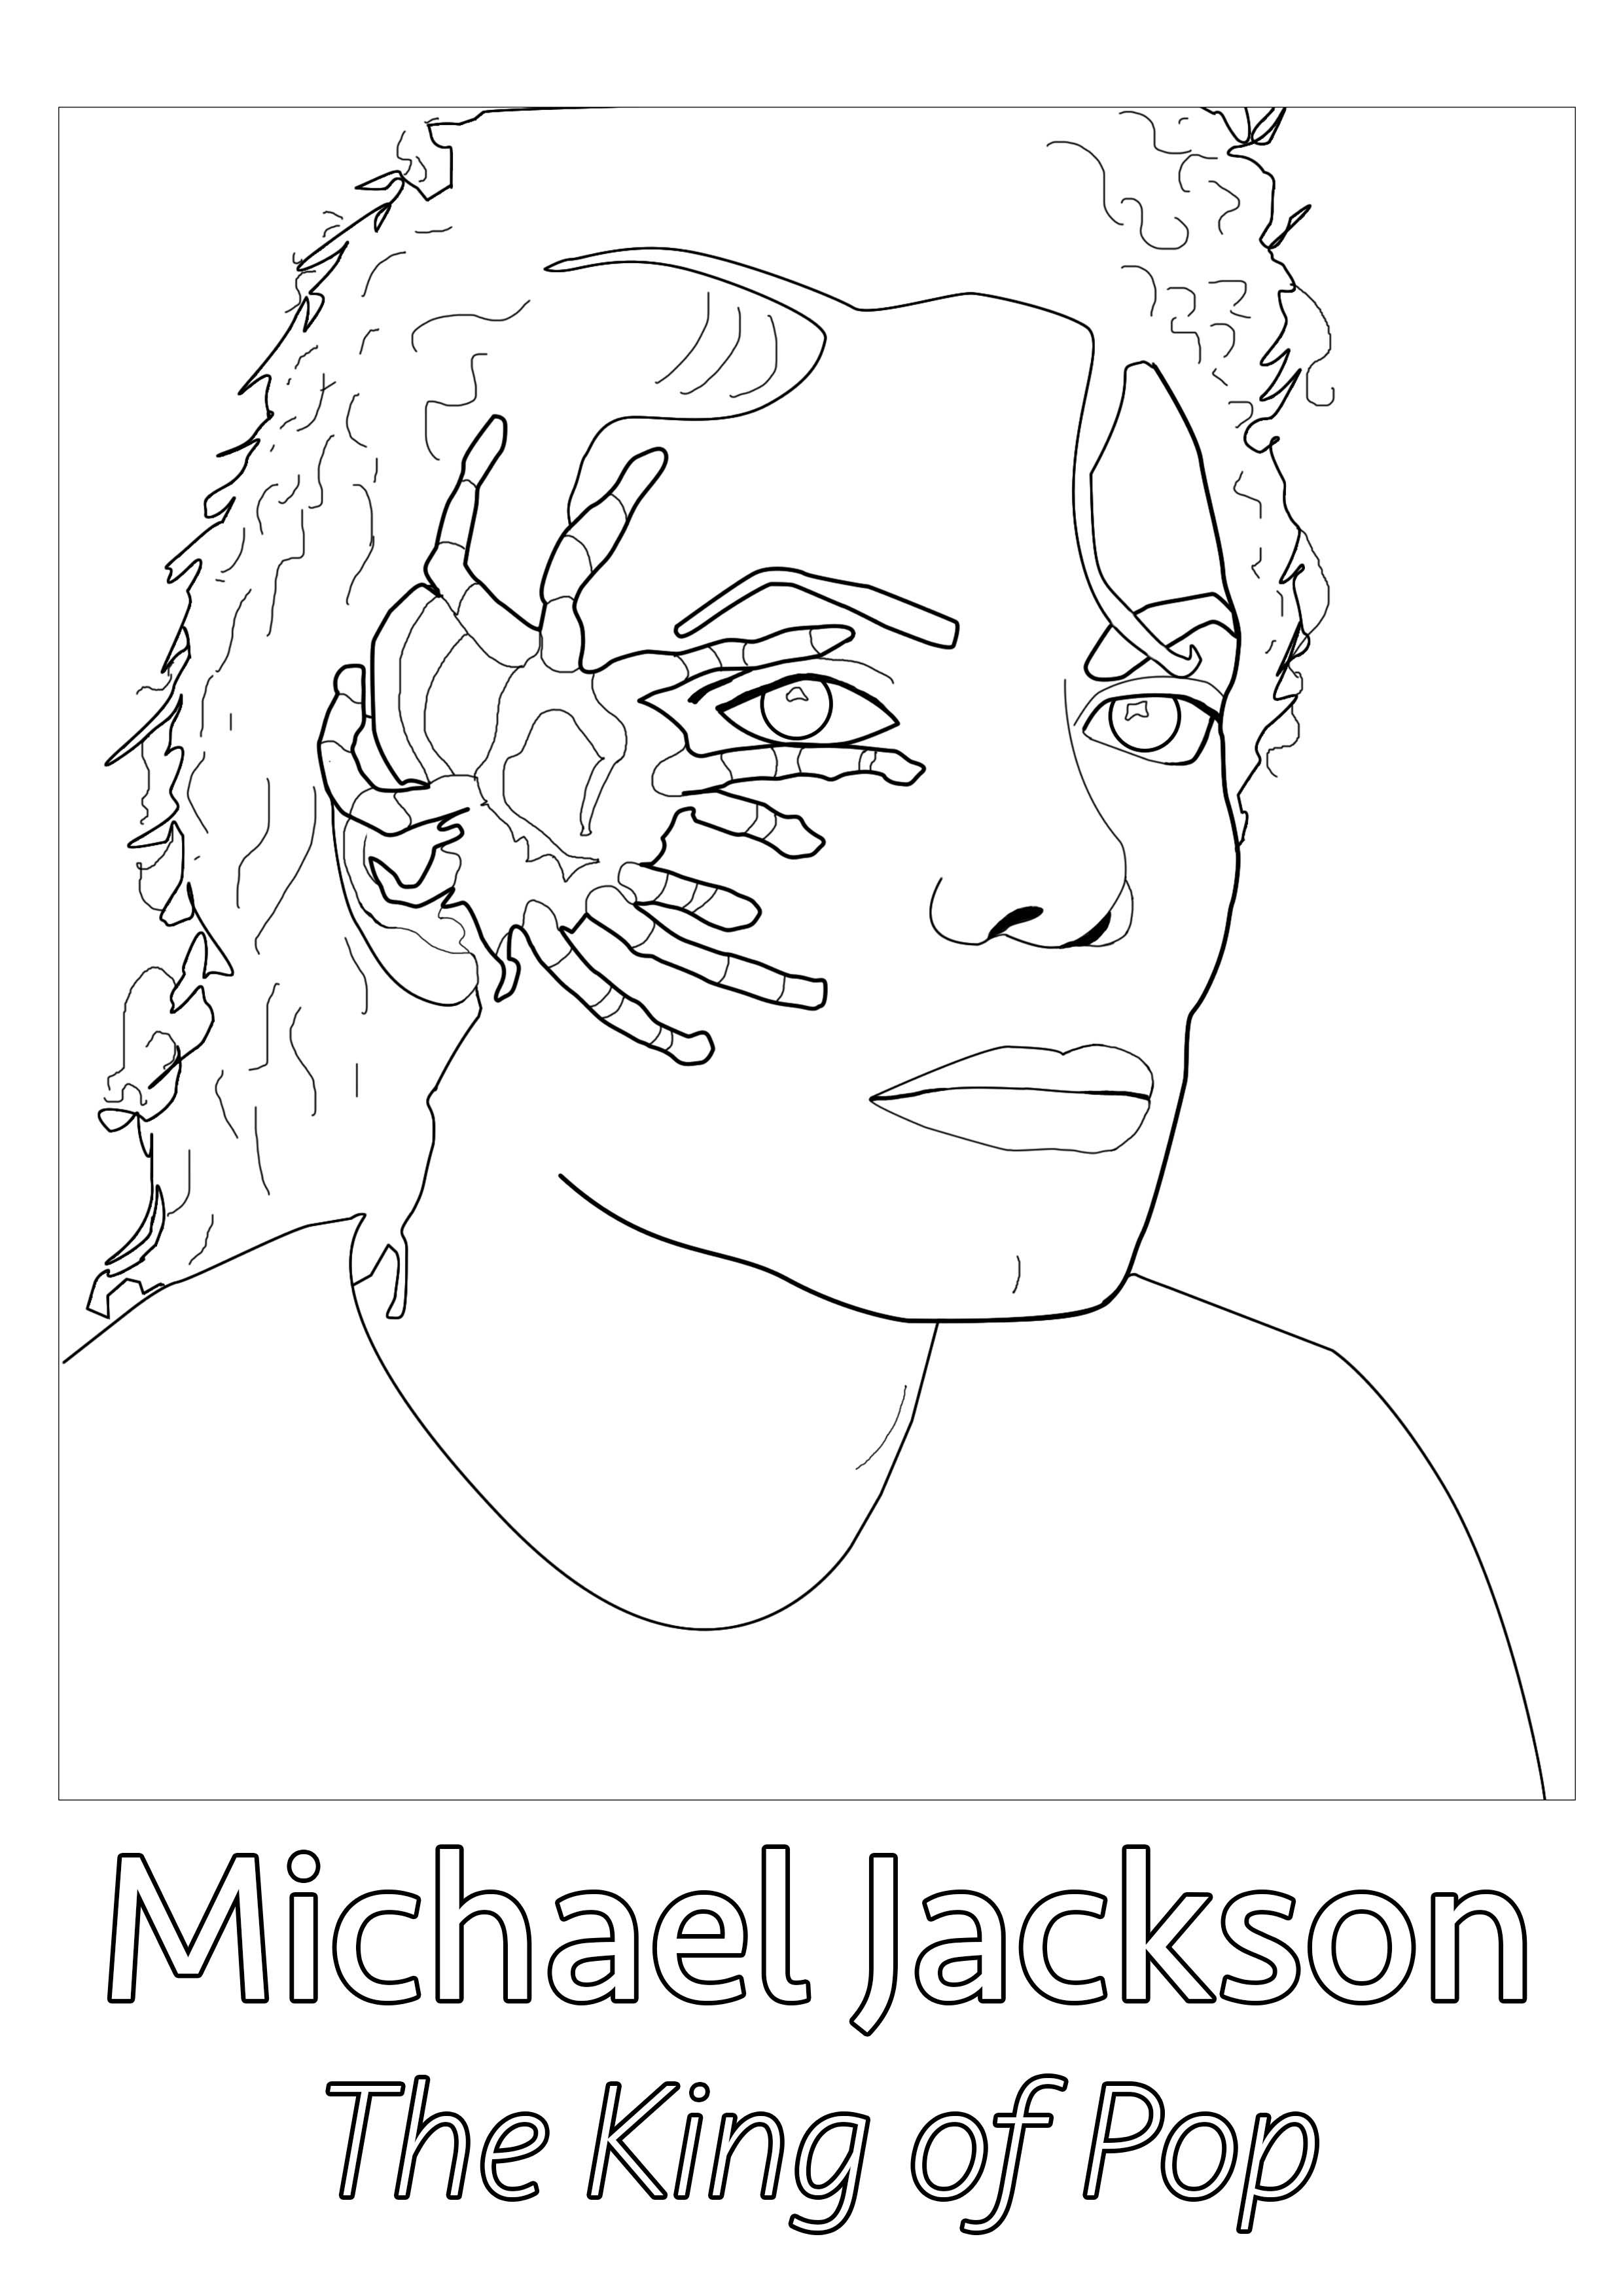 Desenho original criado a partir de uma fotografia rara de Michael Jackson, com uma aranha no seu rosto